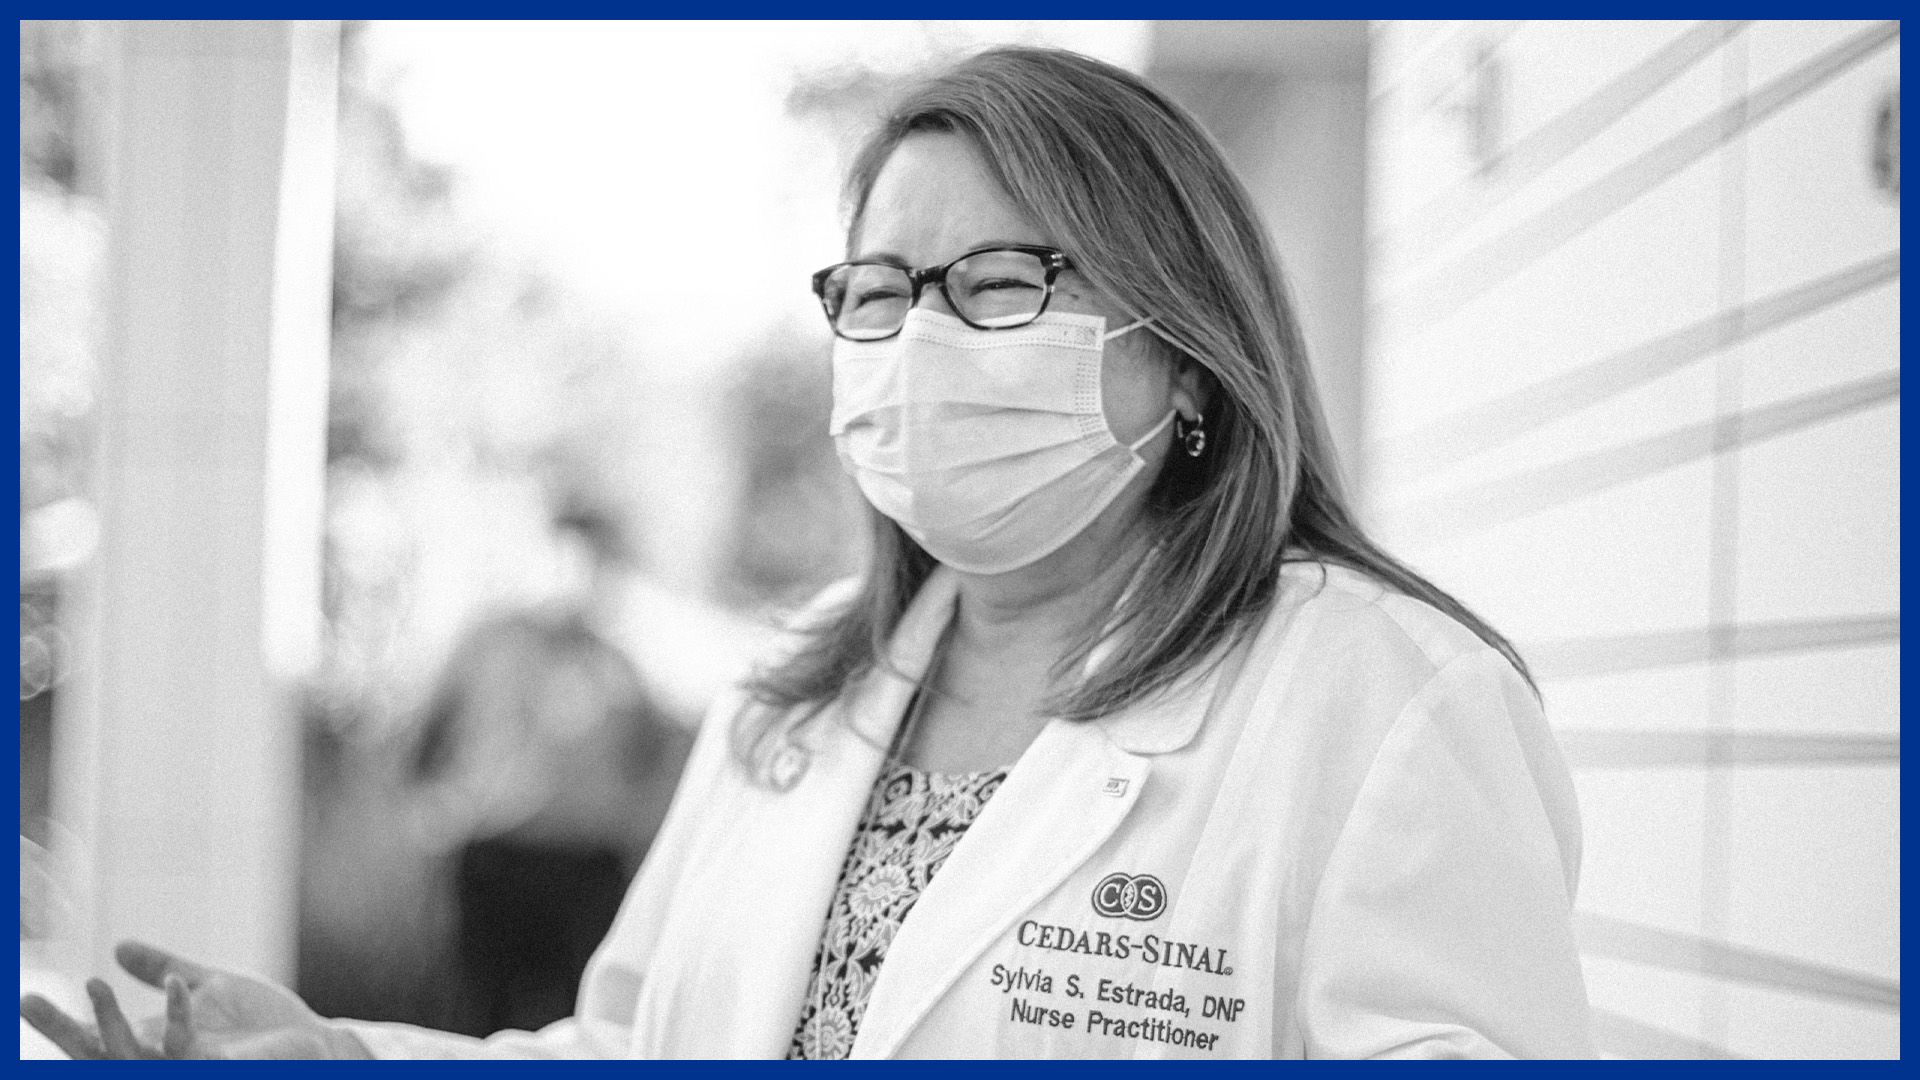 Cedars-Sinai Nurse is Los Angeles Rams' Fan of the Year